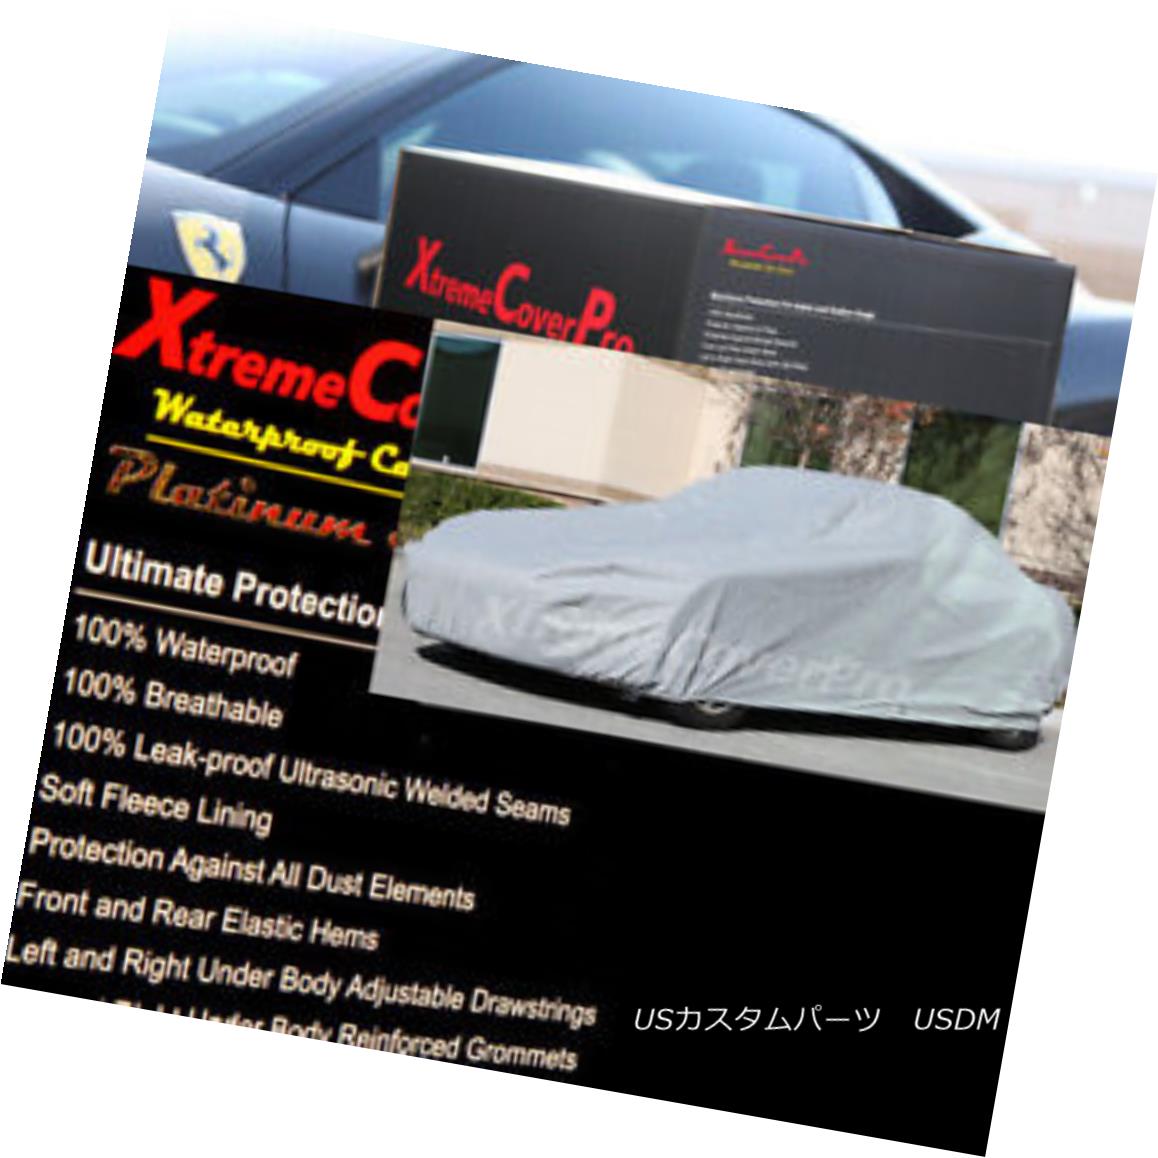 カーカバー 2015 JEEP WRANGLER Waterproof Car Cover - Gray 2015 JEEP WRANGLER防水カーカバー - グレー